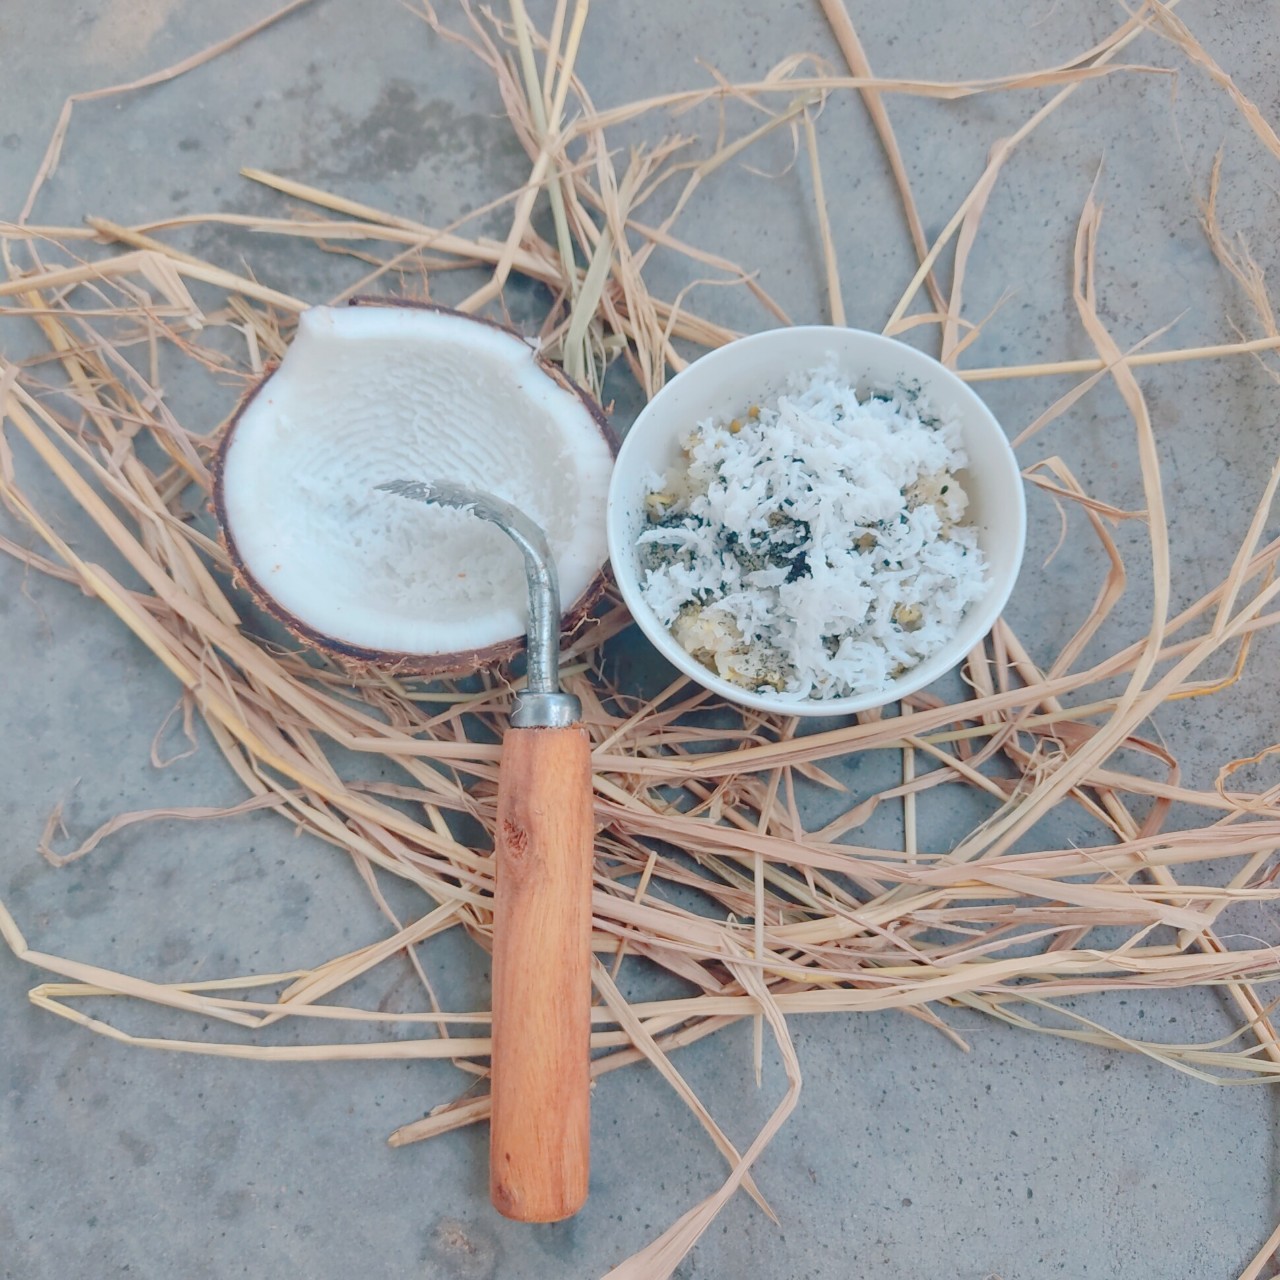 Dụng cụ nạo dừa thủ công, sò dừa thủ công tay cầm bằng gỗ, sò dừa quê - Hàng thủ công xứ Nẫu [Ảnh thật]